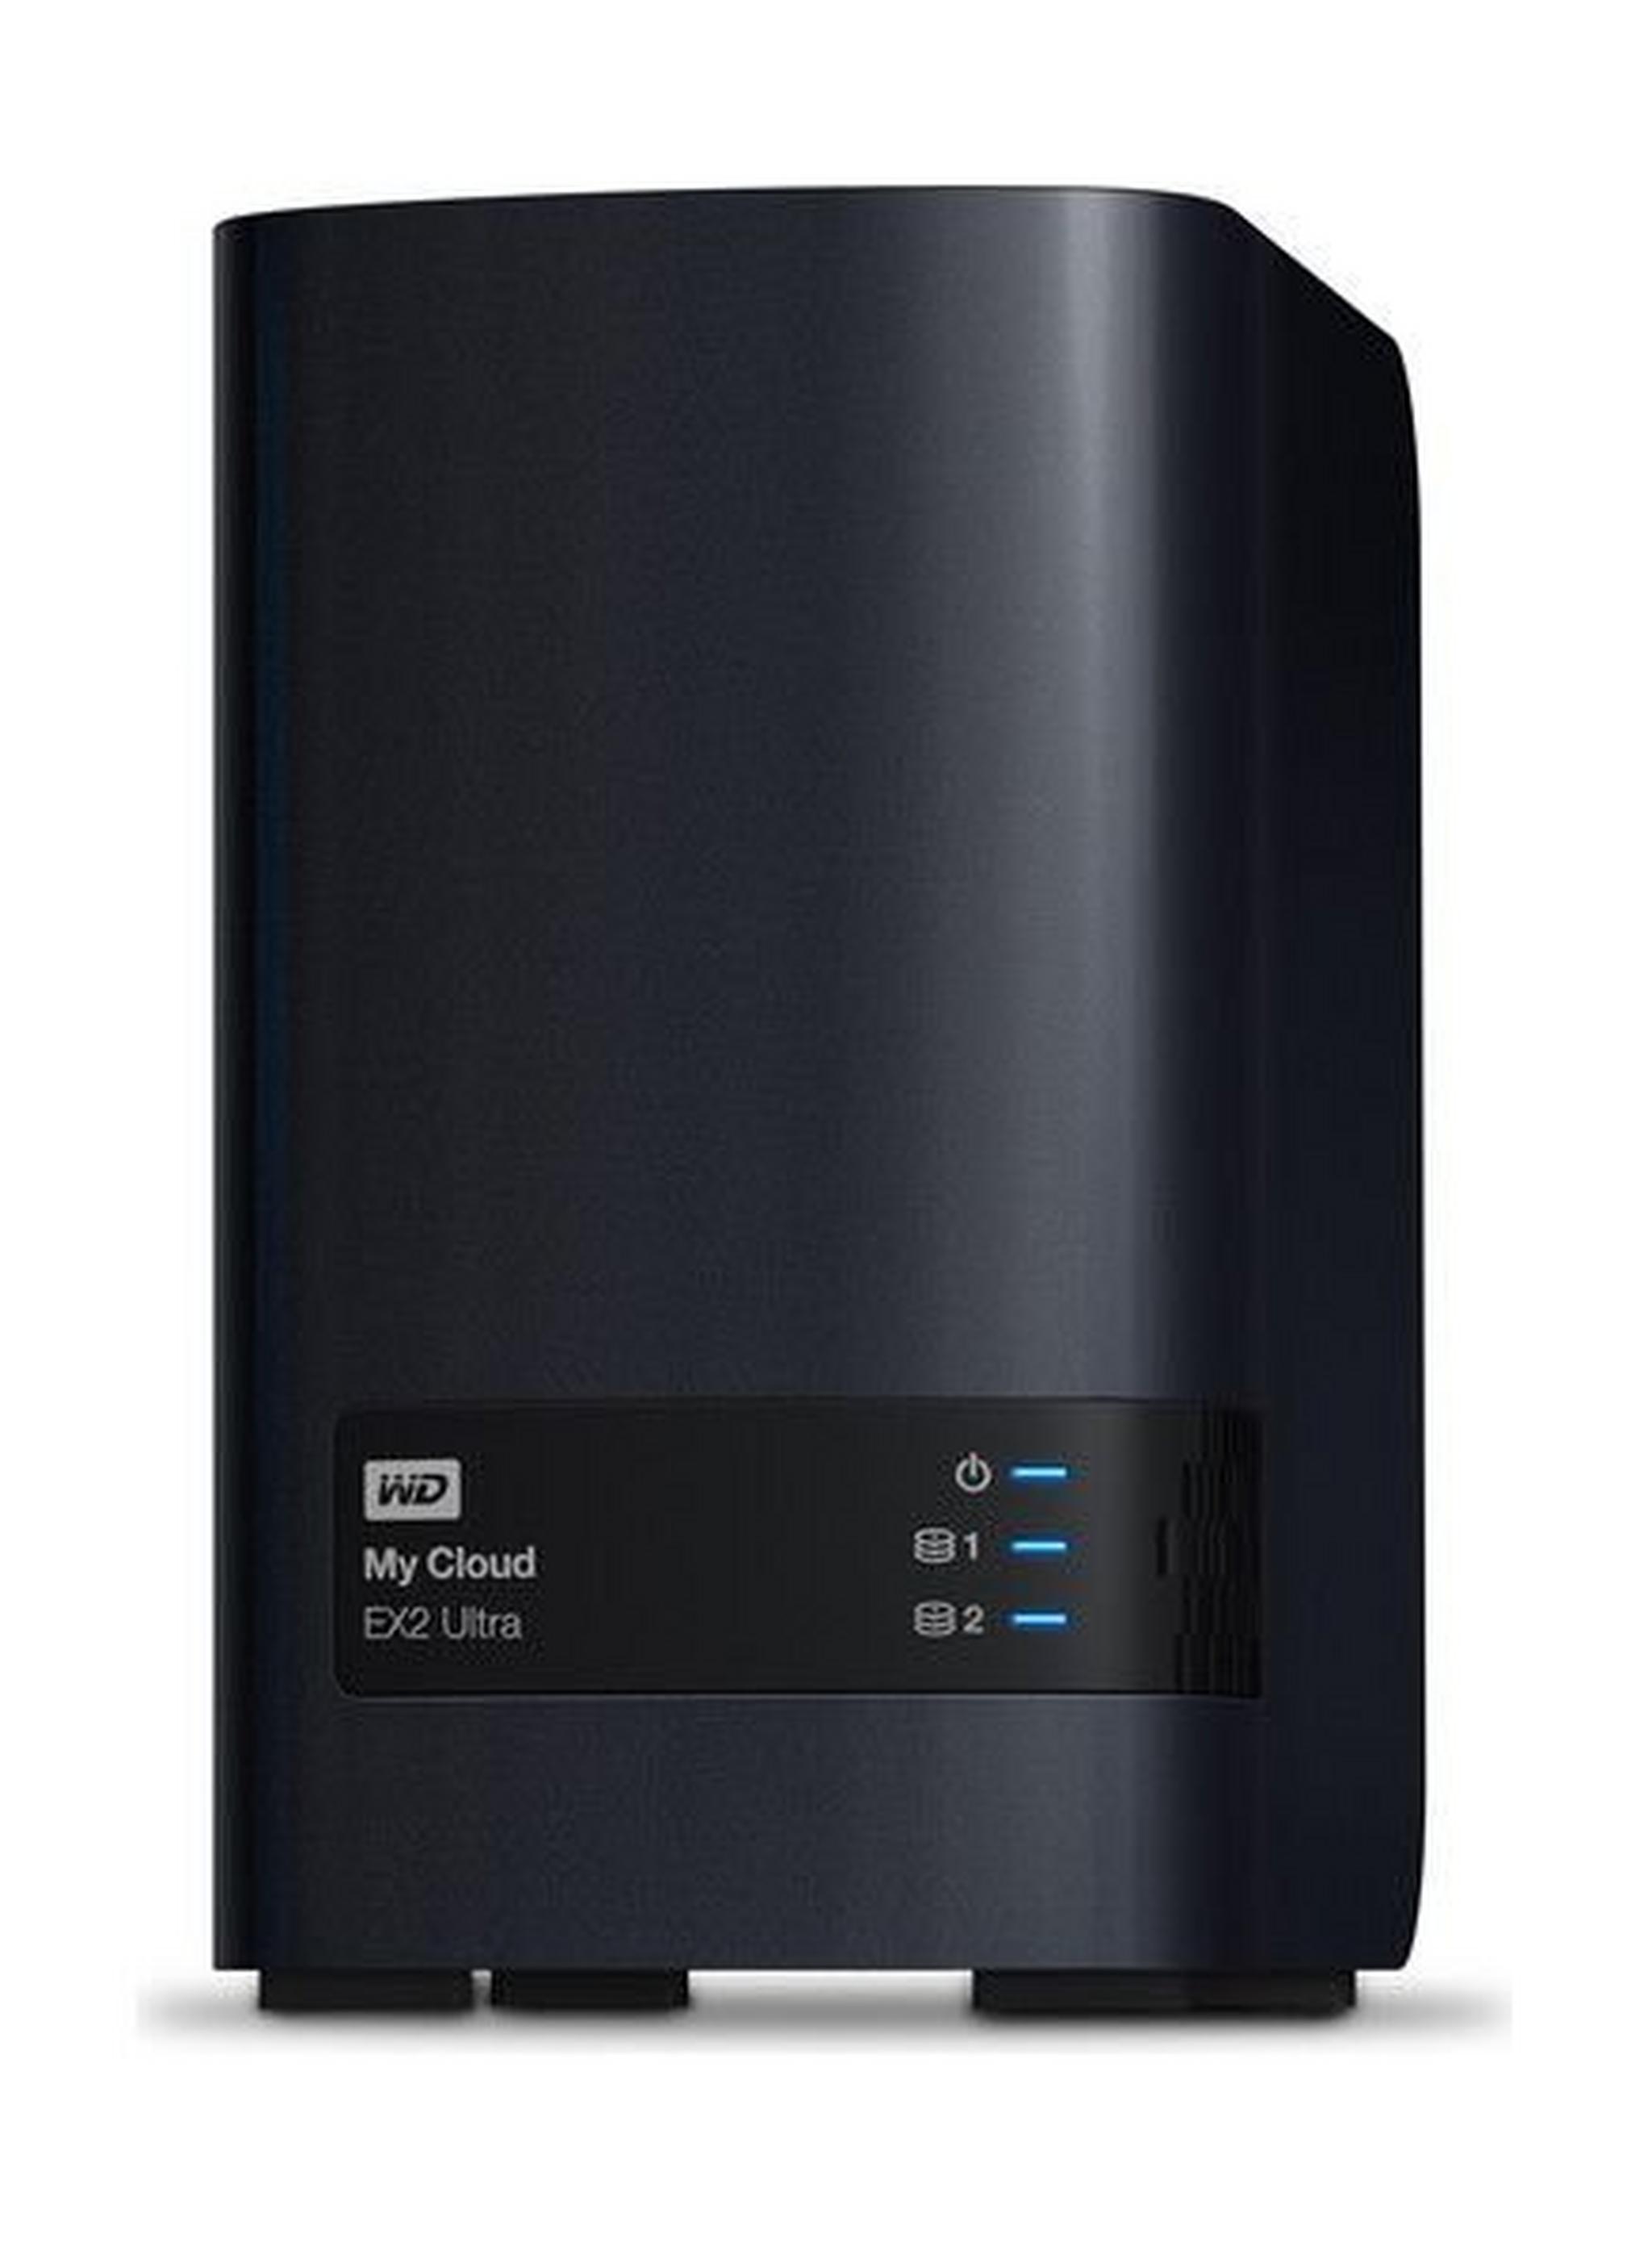 Western Digital My Cloud EX2 Ultra 4TB 2-Bay Personal Cloud Storage (WDBVBZ0040JCH)